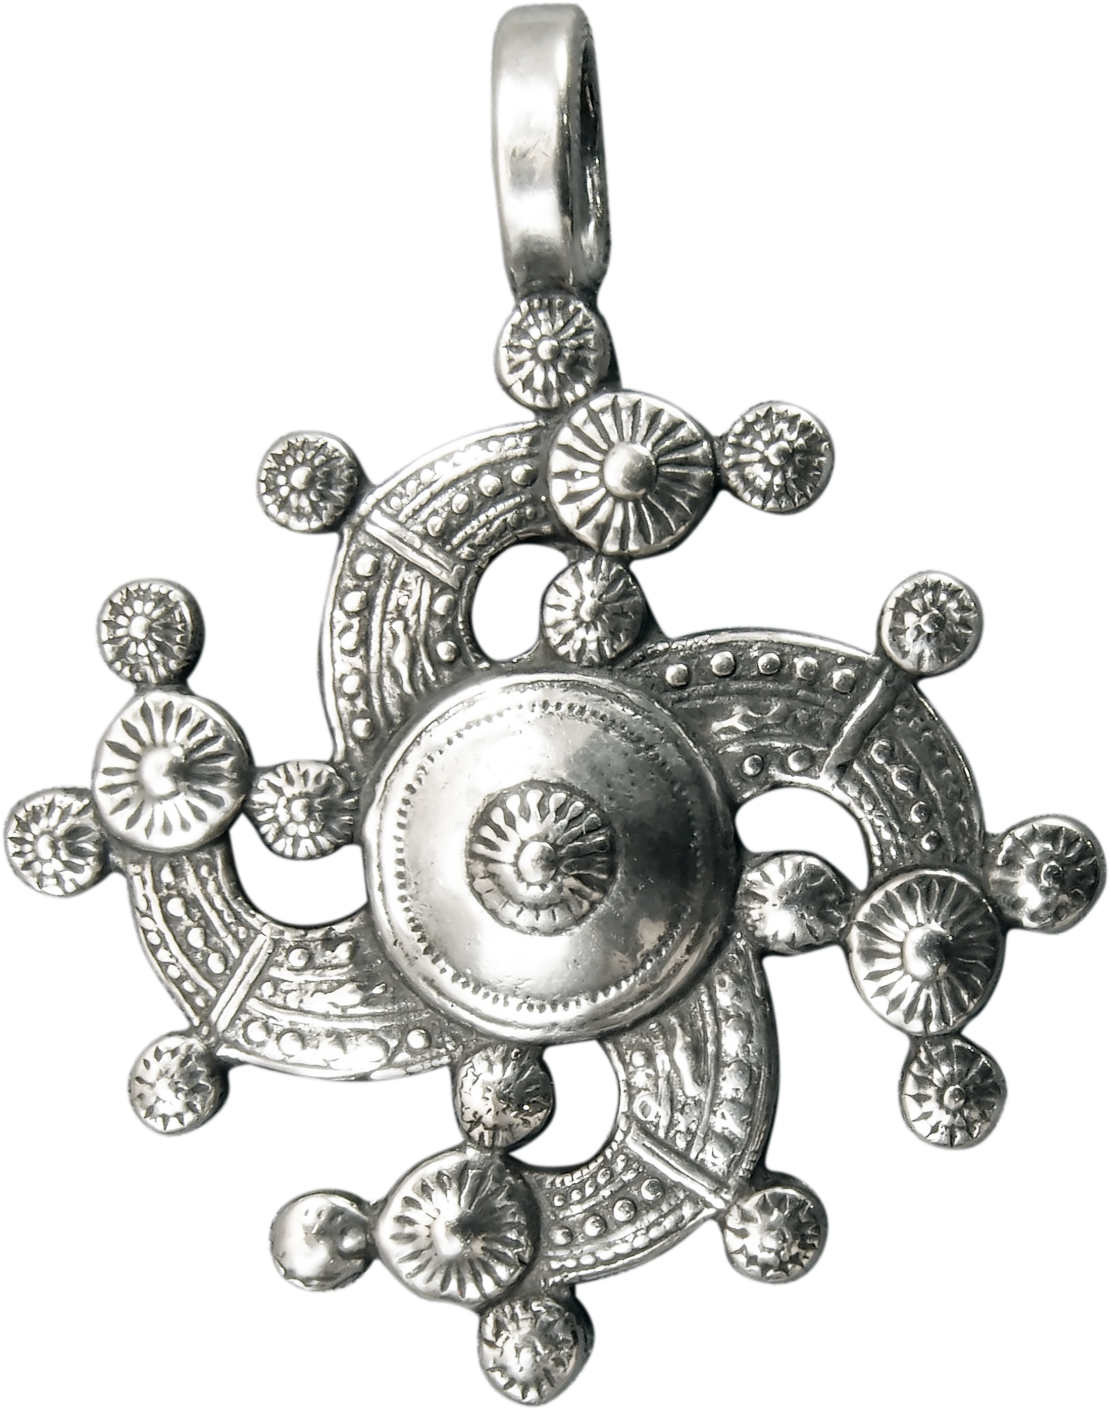 Scandinavian pendant